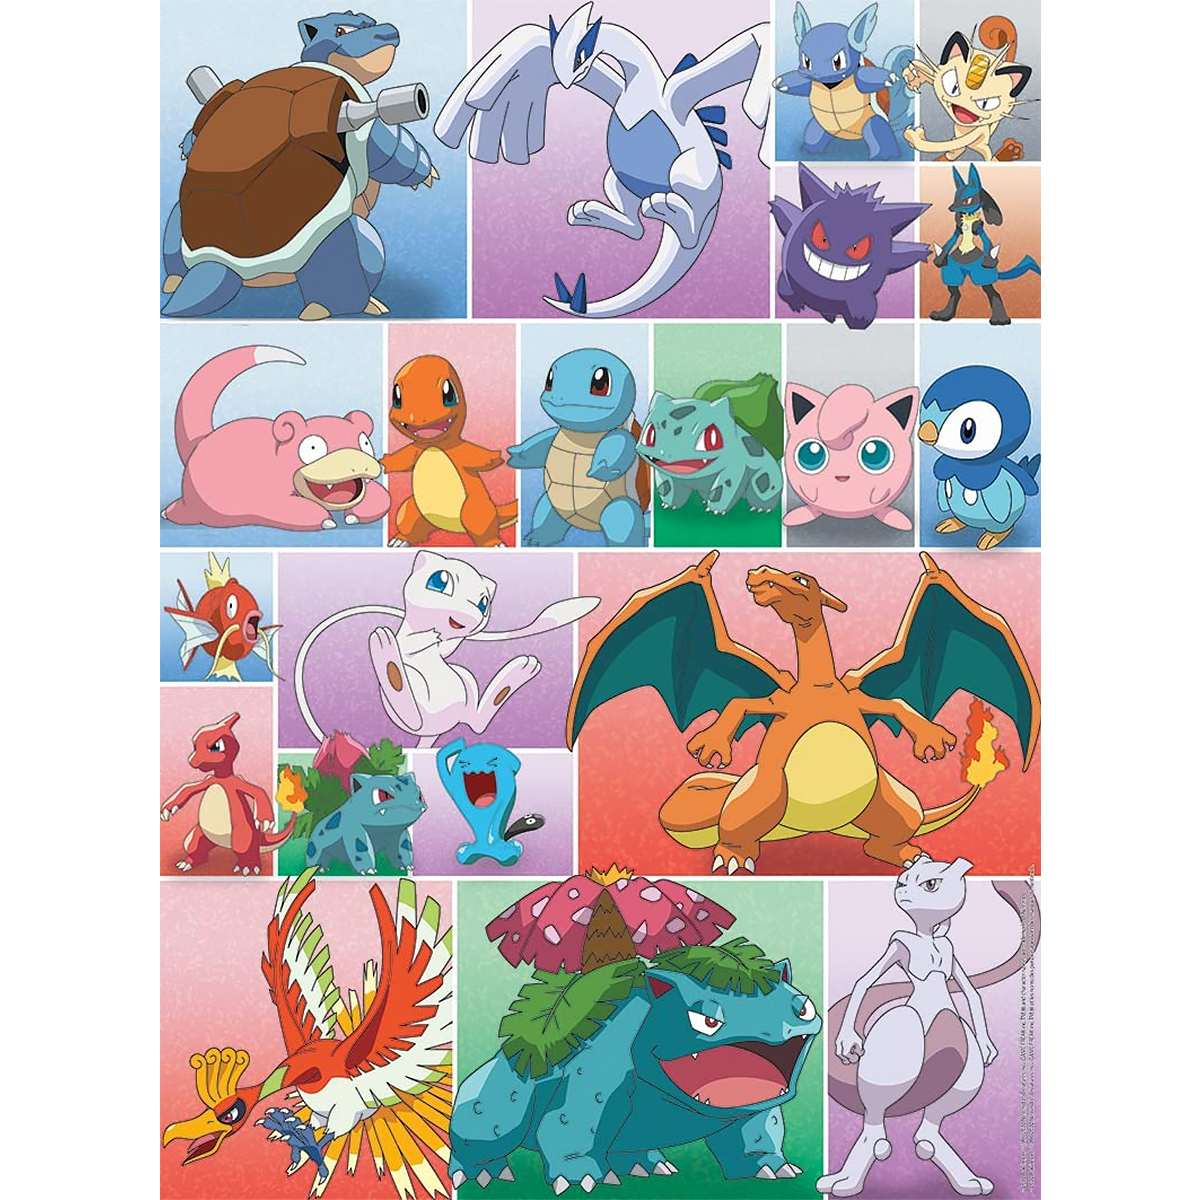 Puzzle Pokémon 500 Piezas Ravensburger